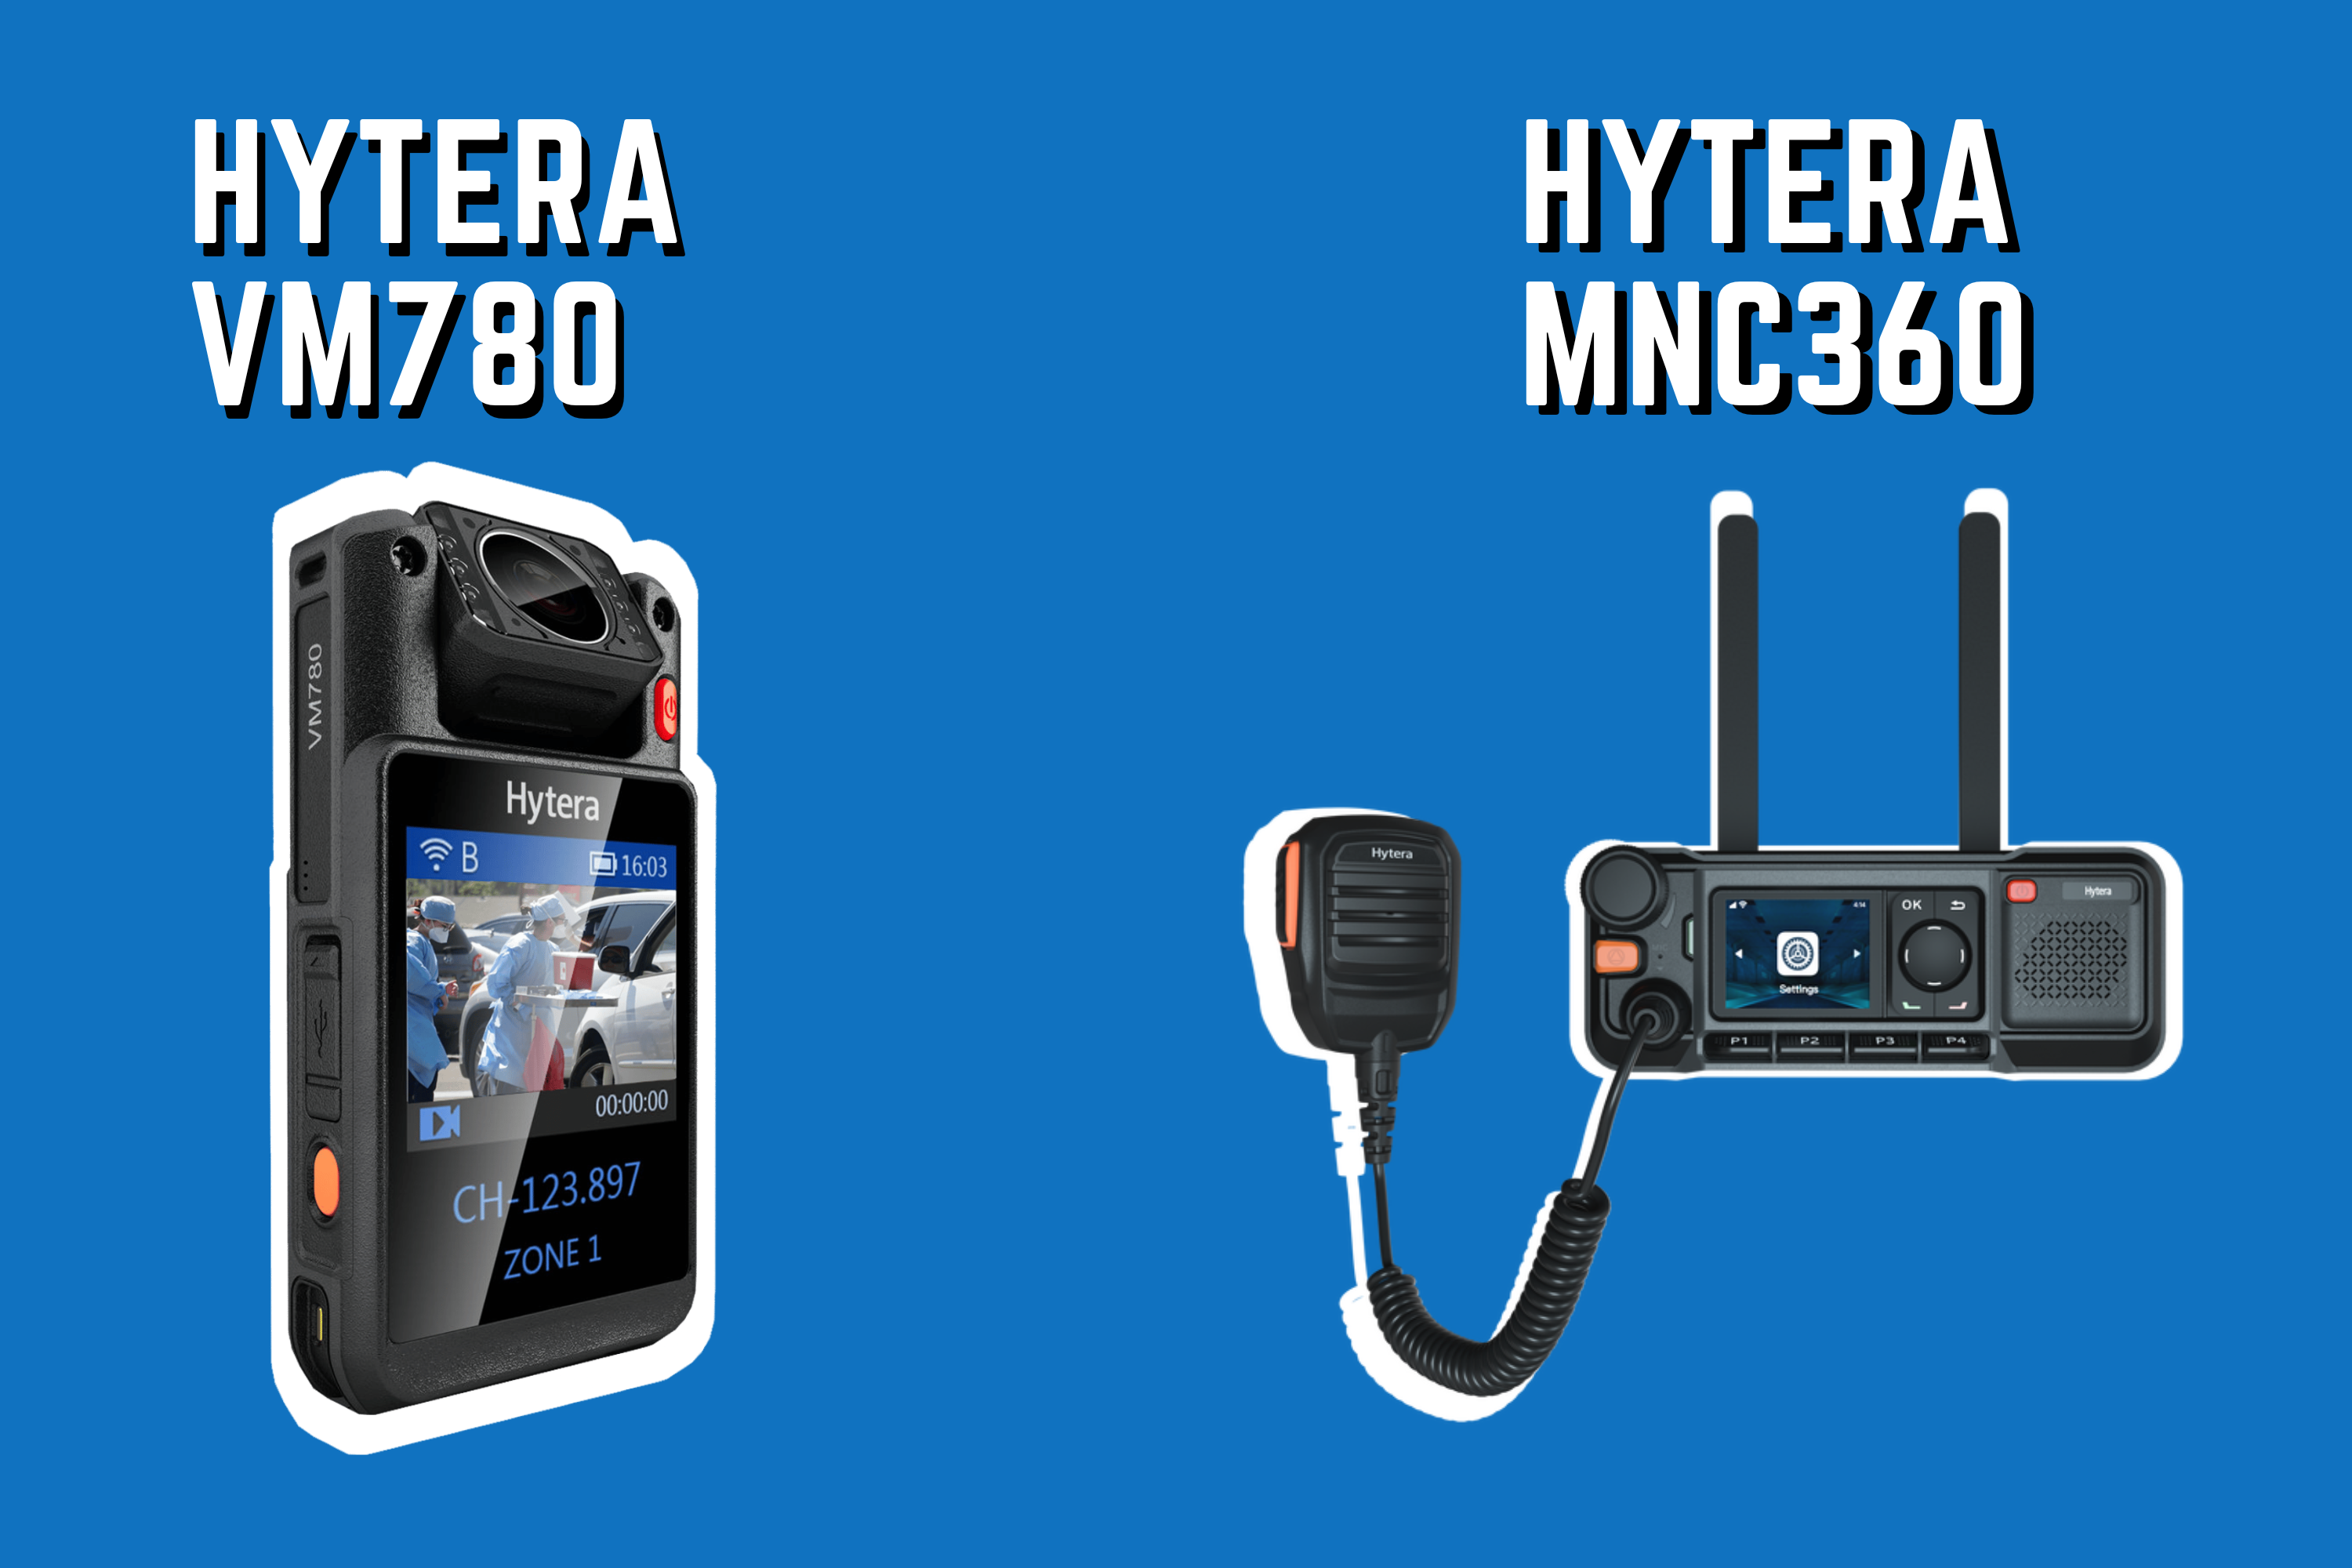 Hytera PoC internetalapú asztali adóvevő és testkamera